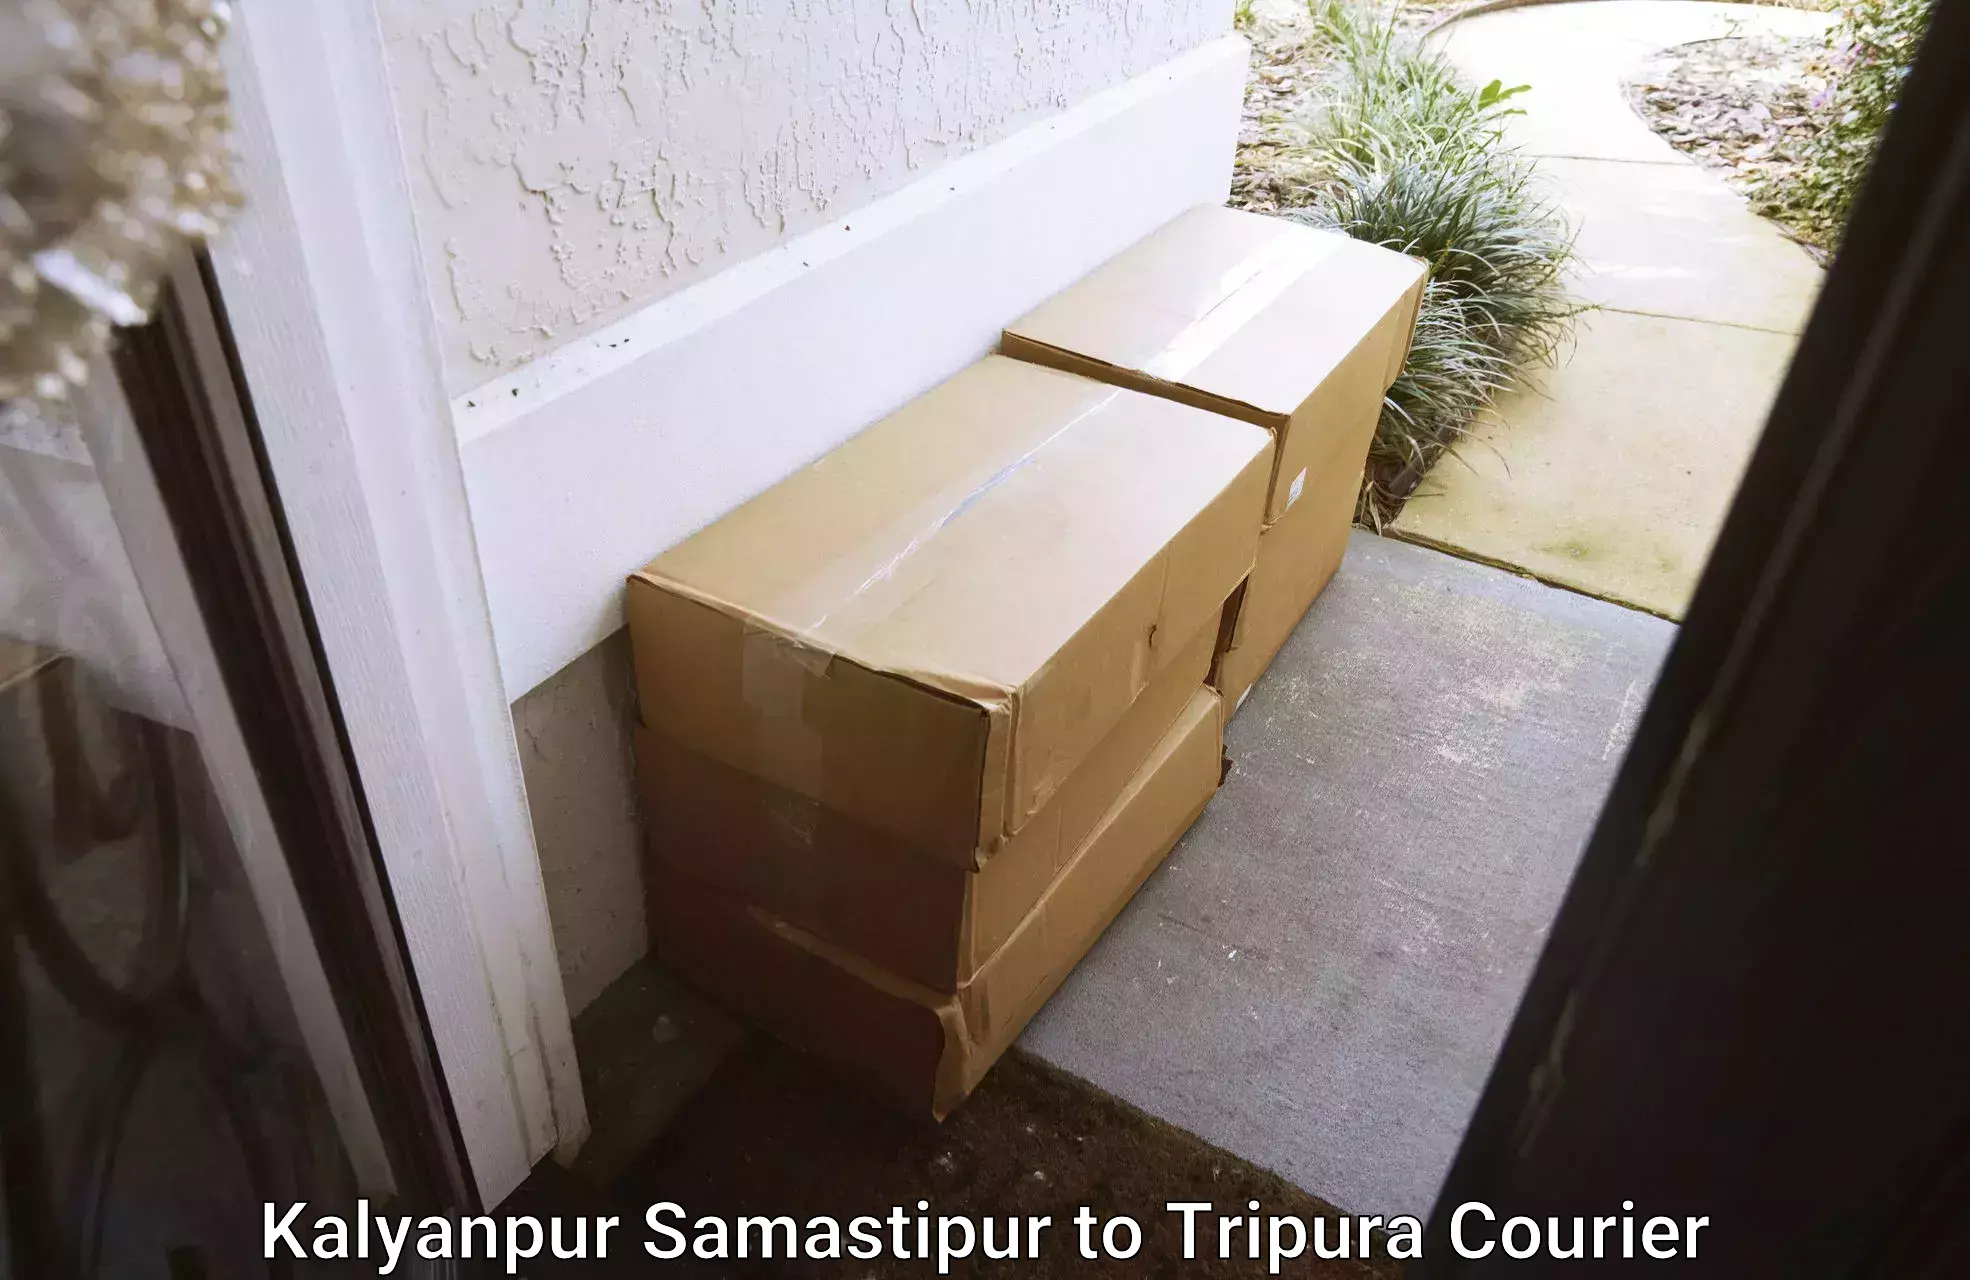 Dependable furniture transport Kalyanpur Samastipur to Tripura